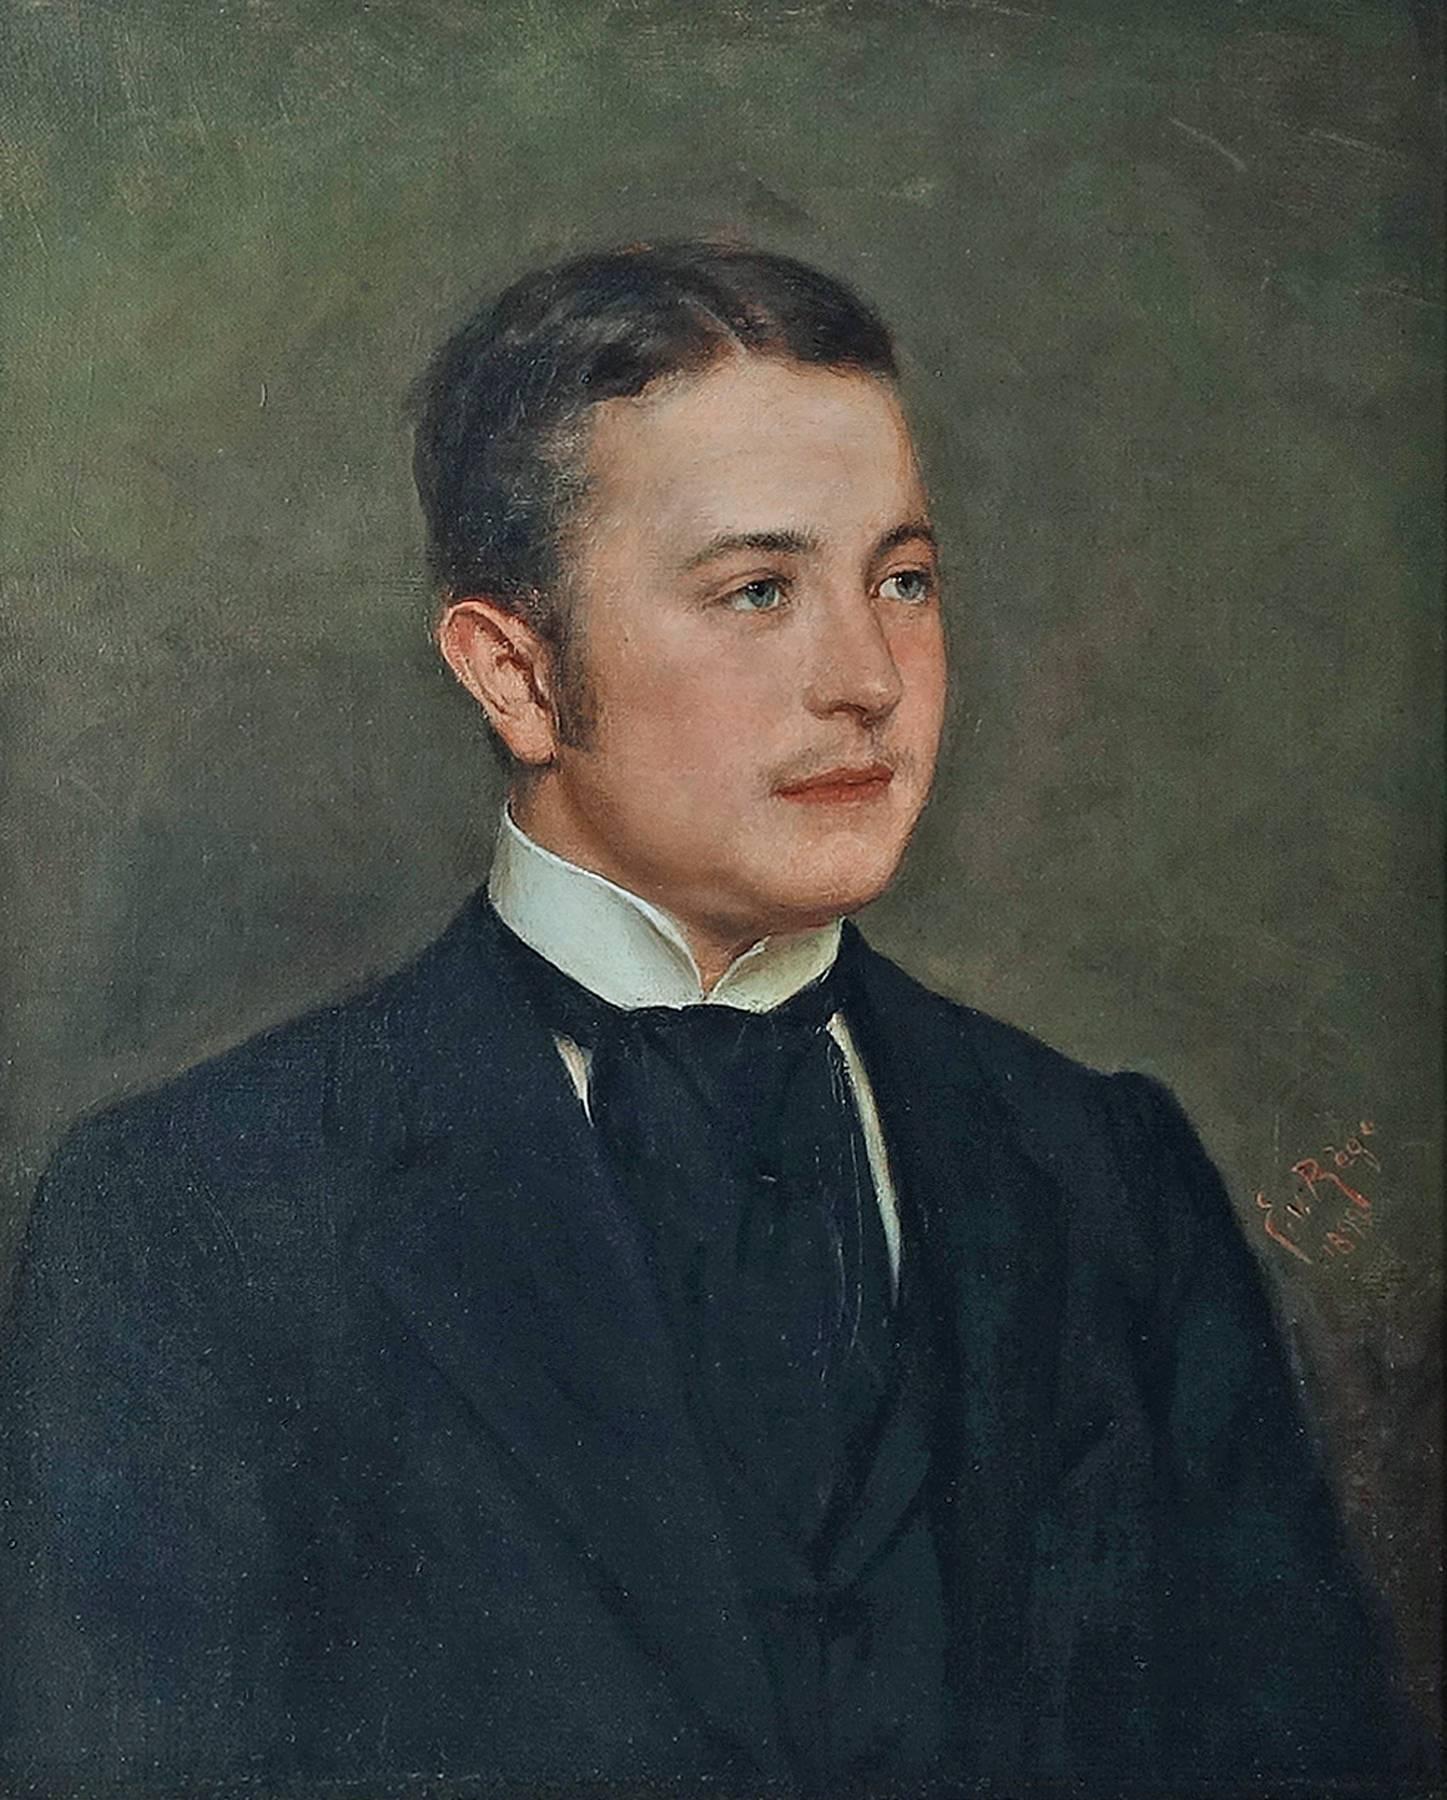 Count Carl August Graf von Schaumburg zu Lehrbach born 1878, Oil Portrait  - Painting by Eugen von Rège